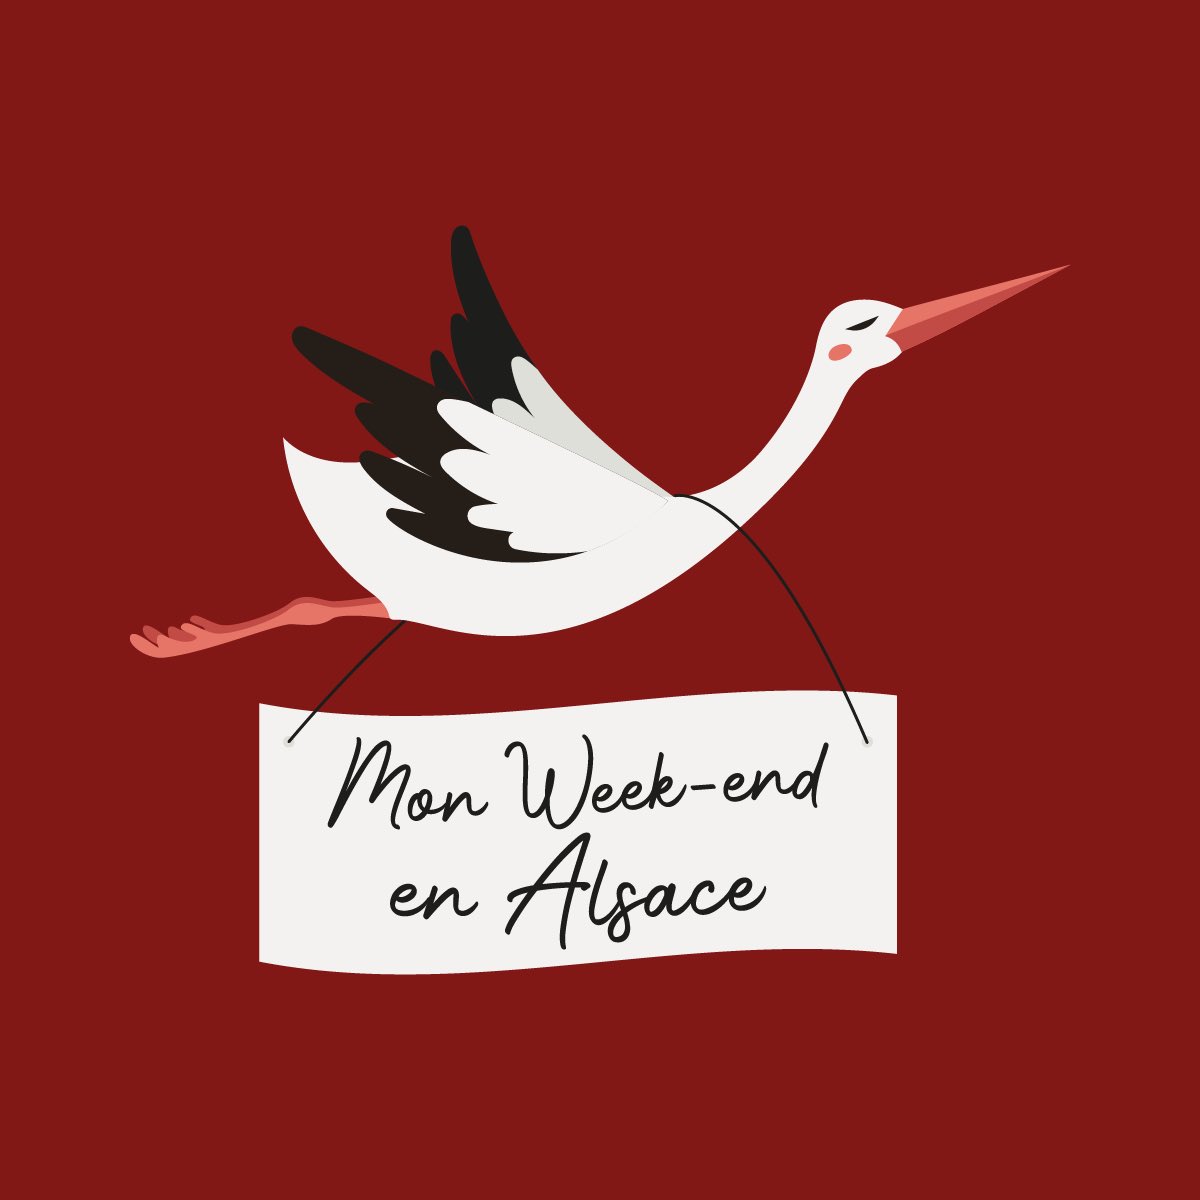 🥨 Après Carnet d’escapades, c’est au tour de Mon week-end en Alsace d’avoir fait peau neuve! ✌️mon-week-end-en-alsace.com #Alsace